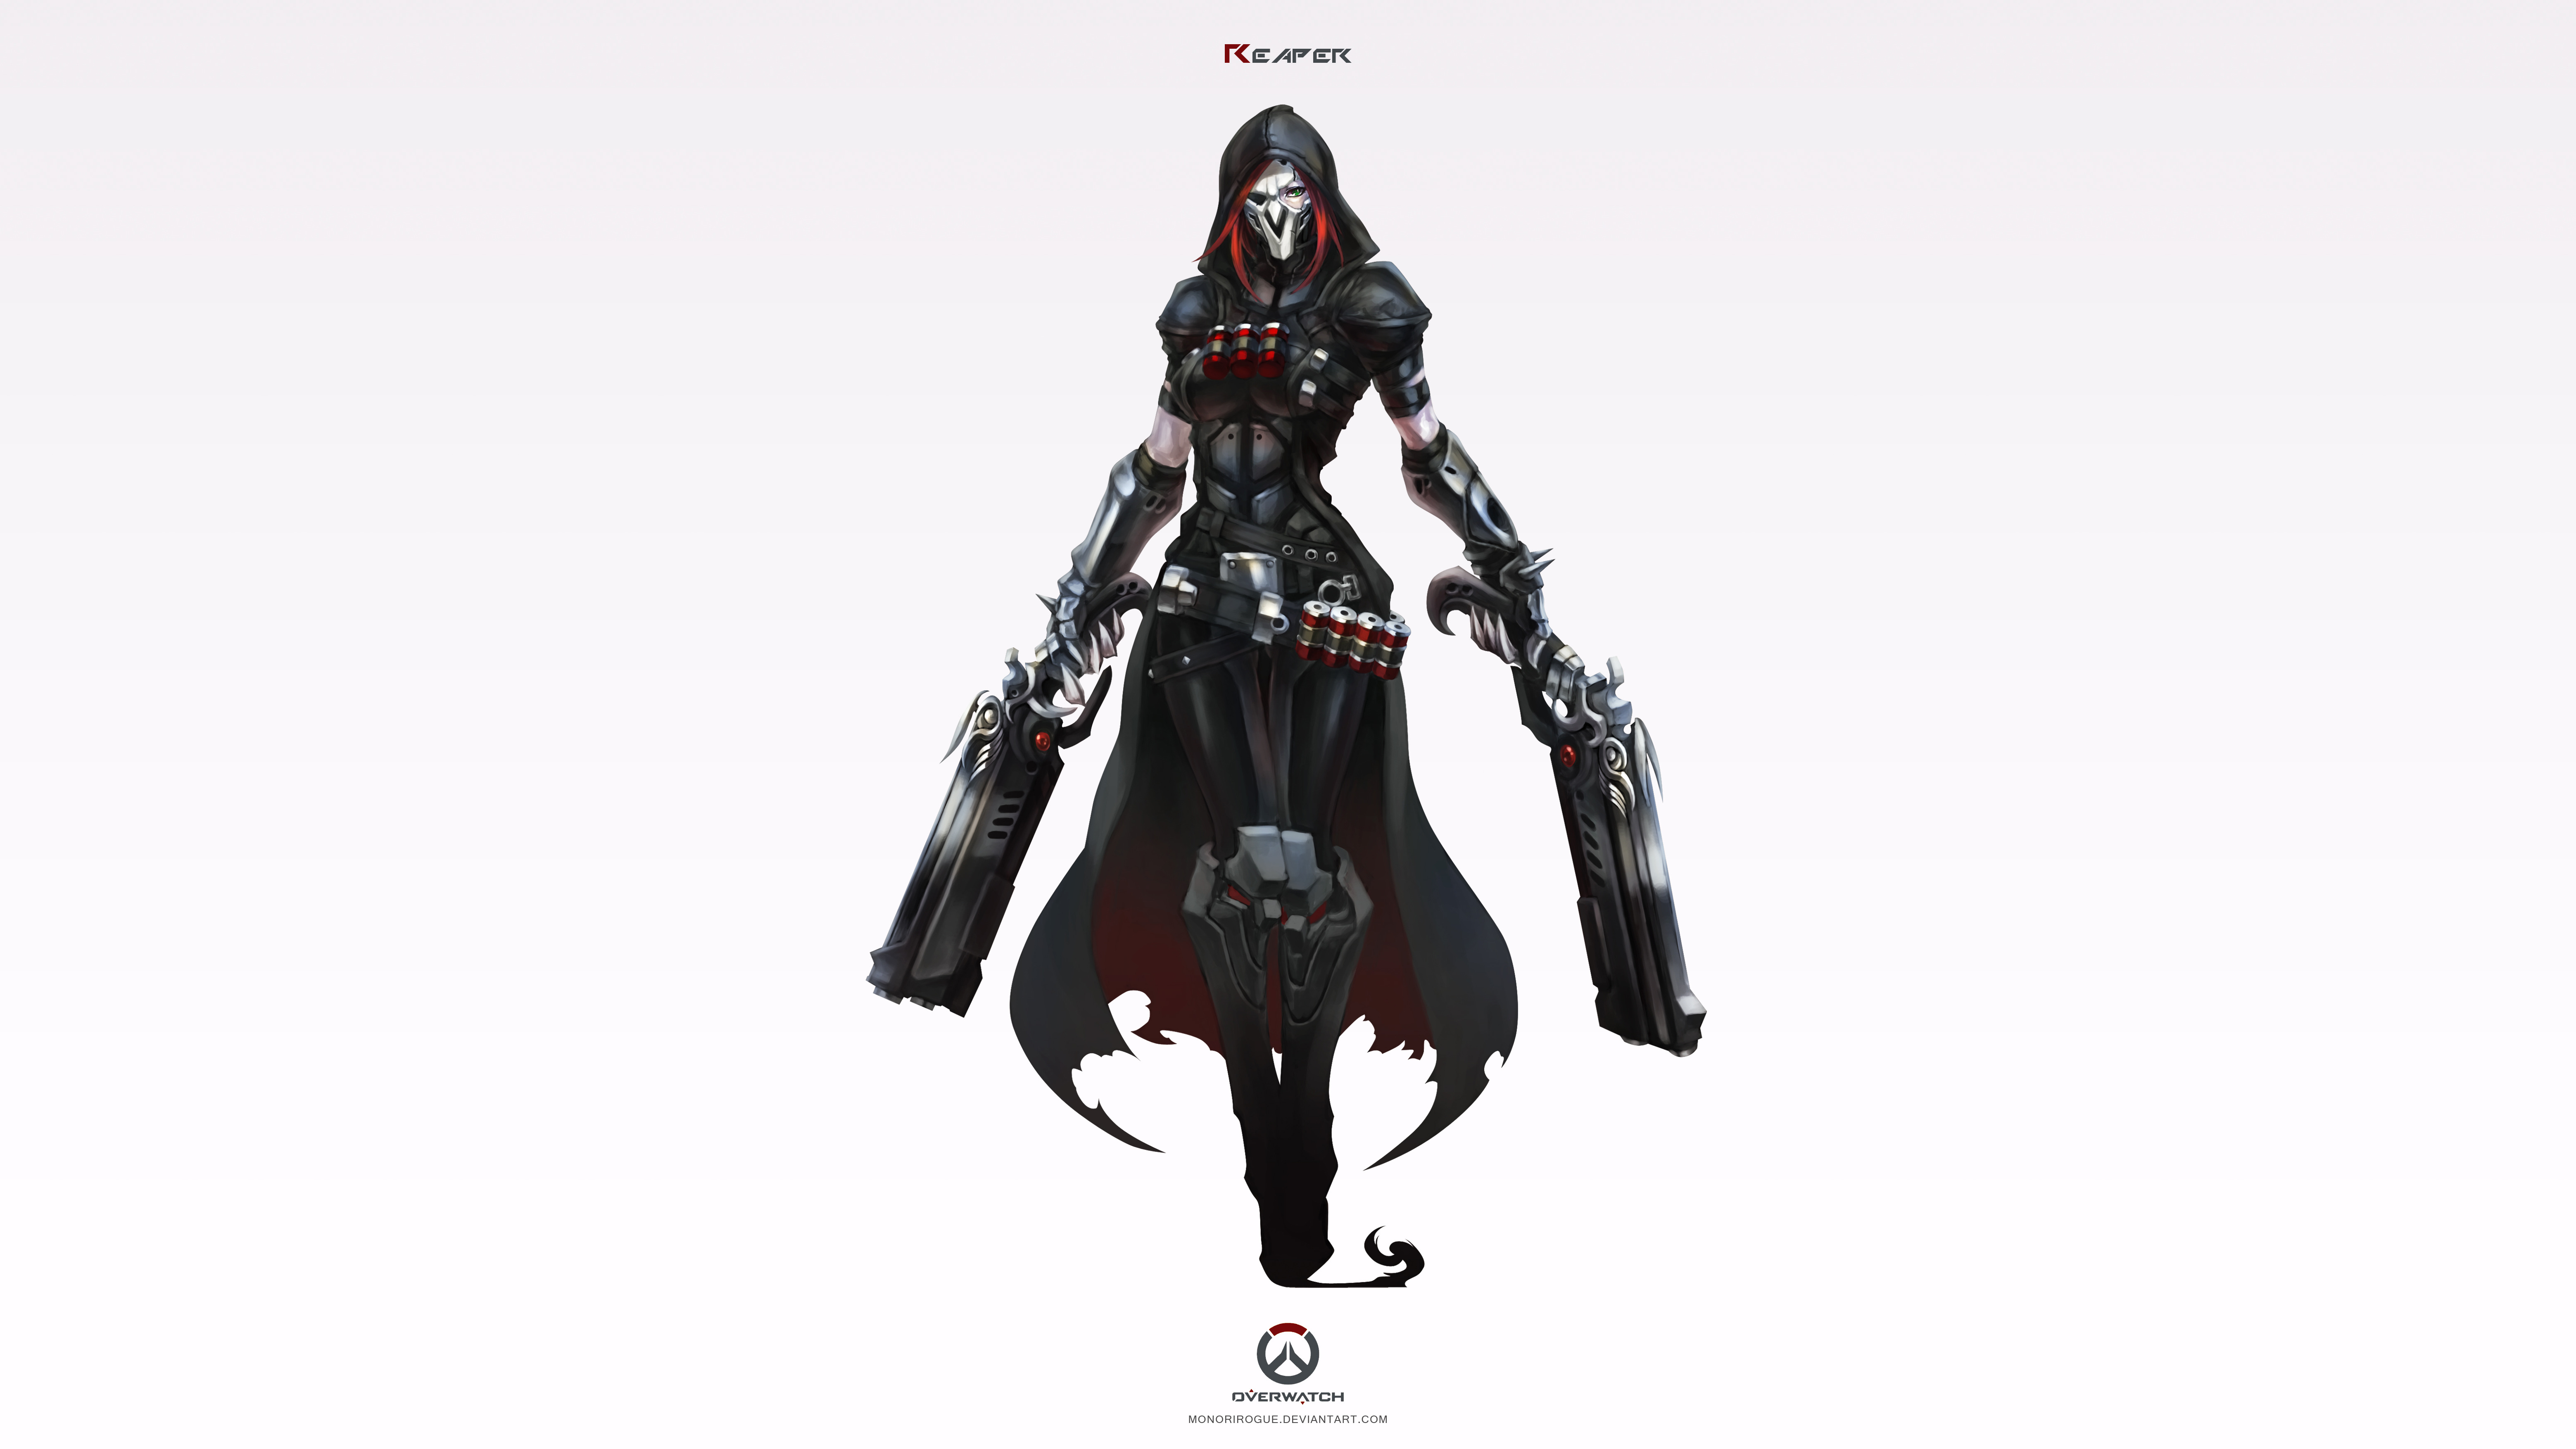 Overwatch, Reaper (Overwatch) Wallpaper